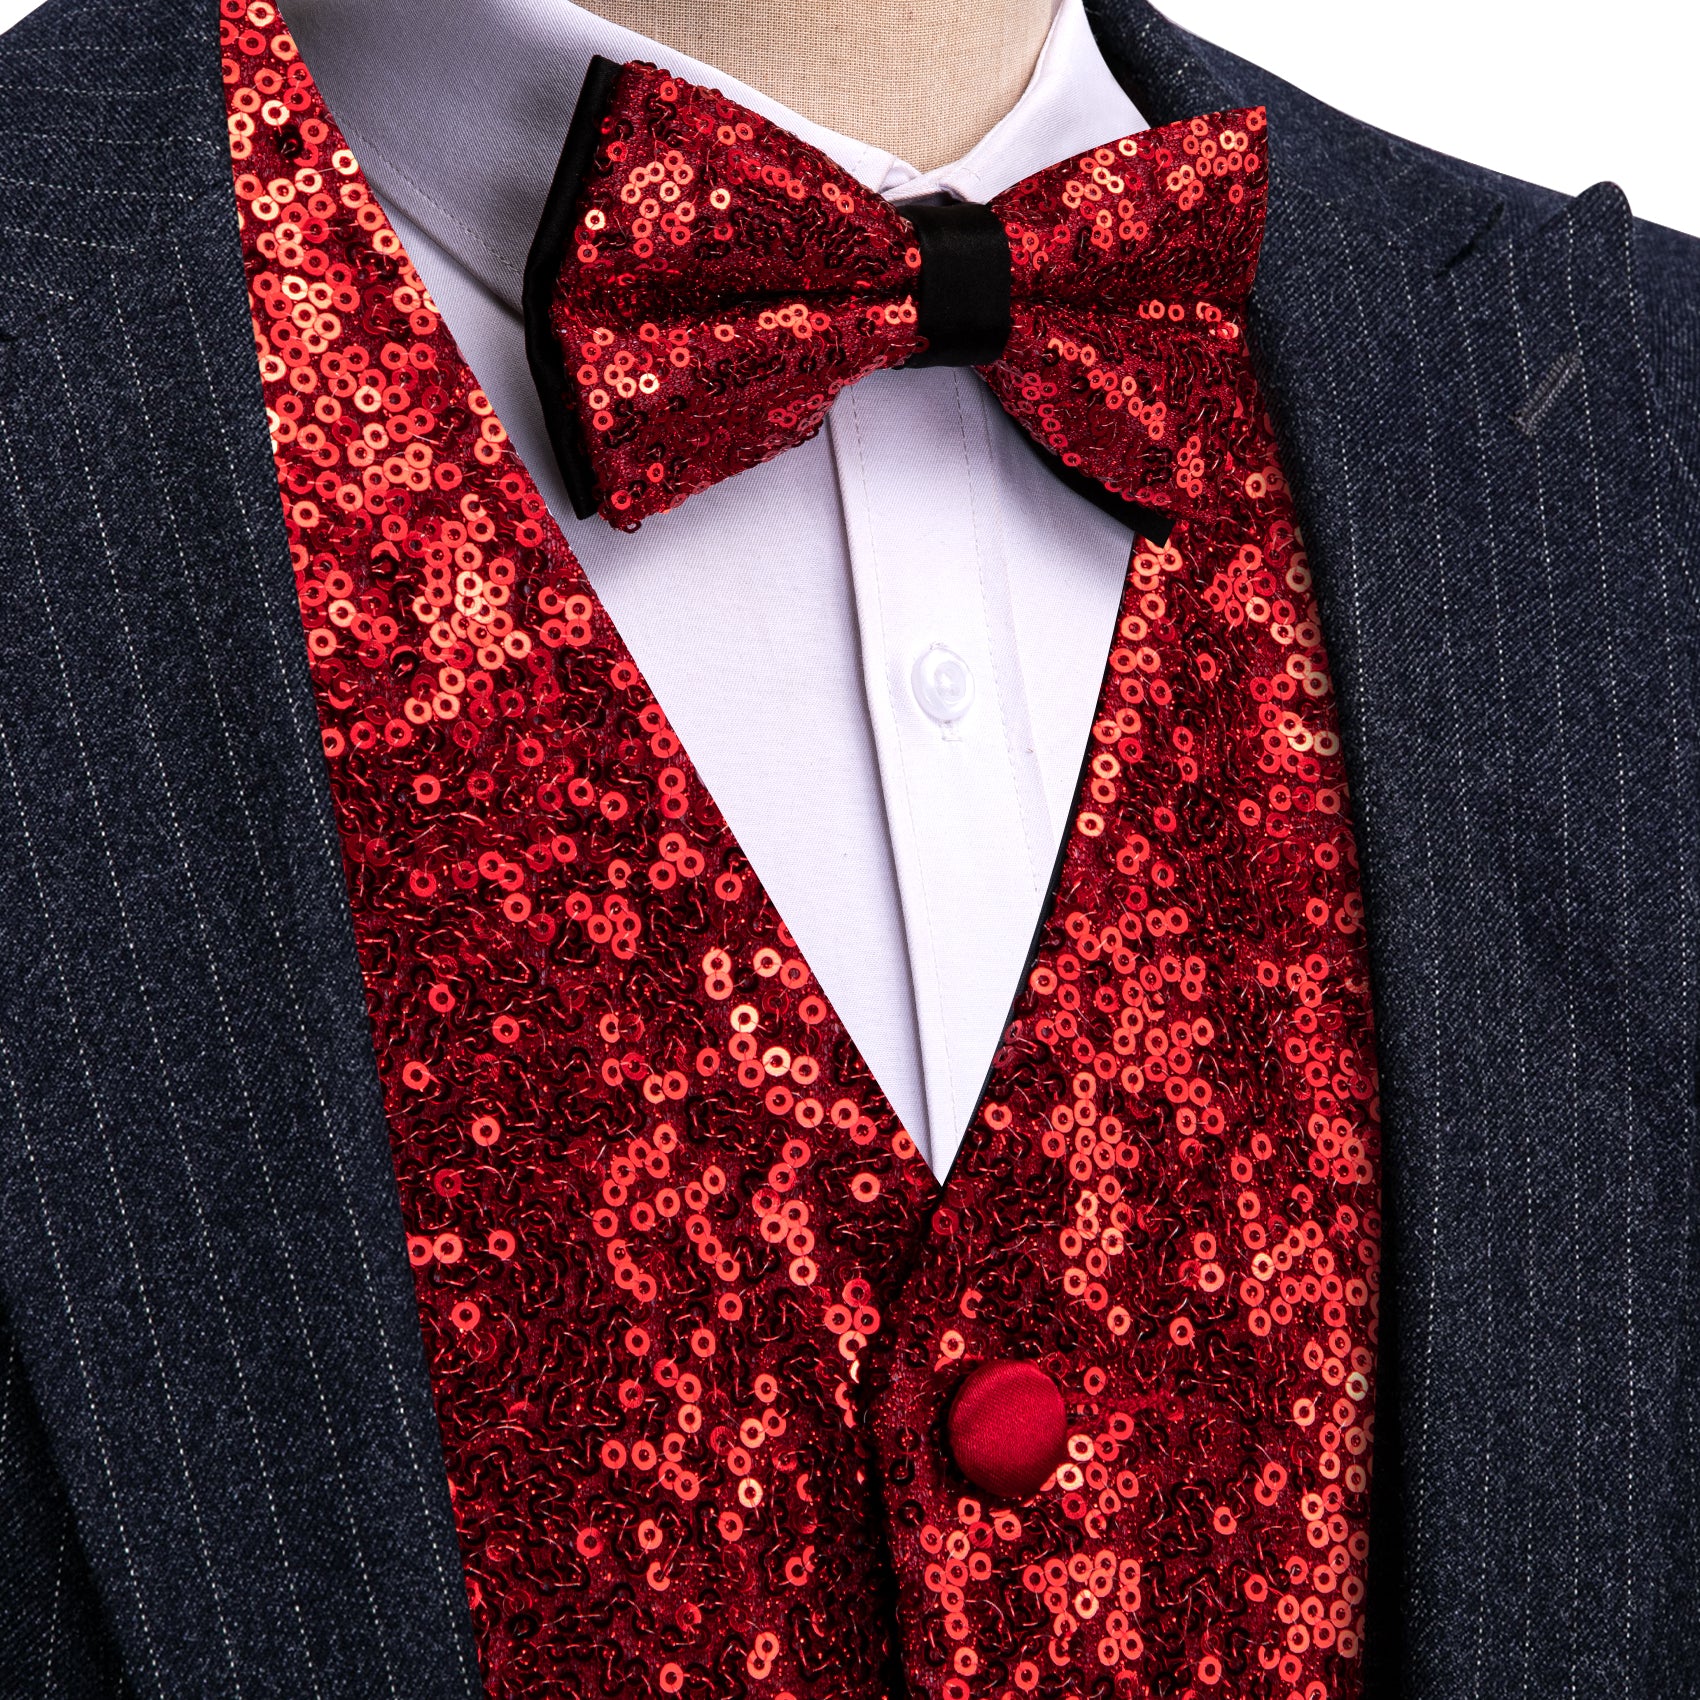 Men's Fire Brick Sequins Silk Bow tie Waistcoat Vest Set